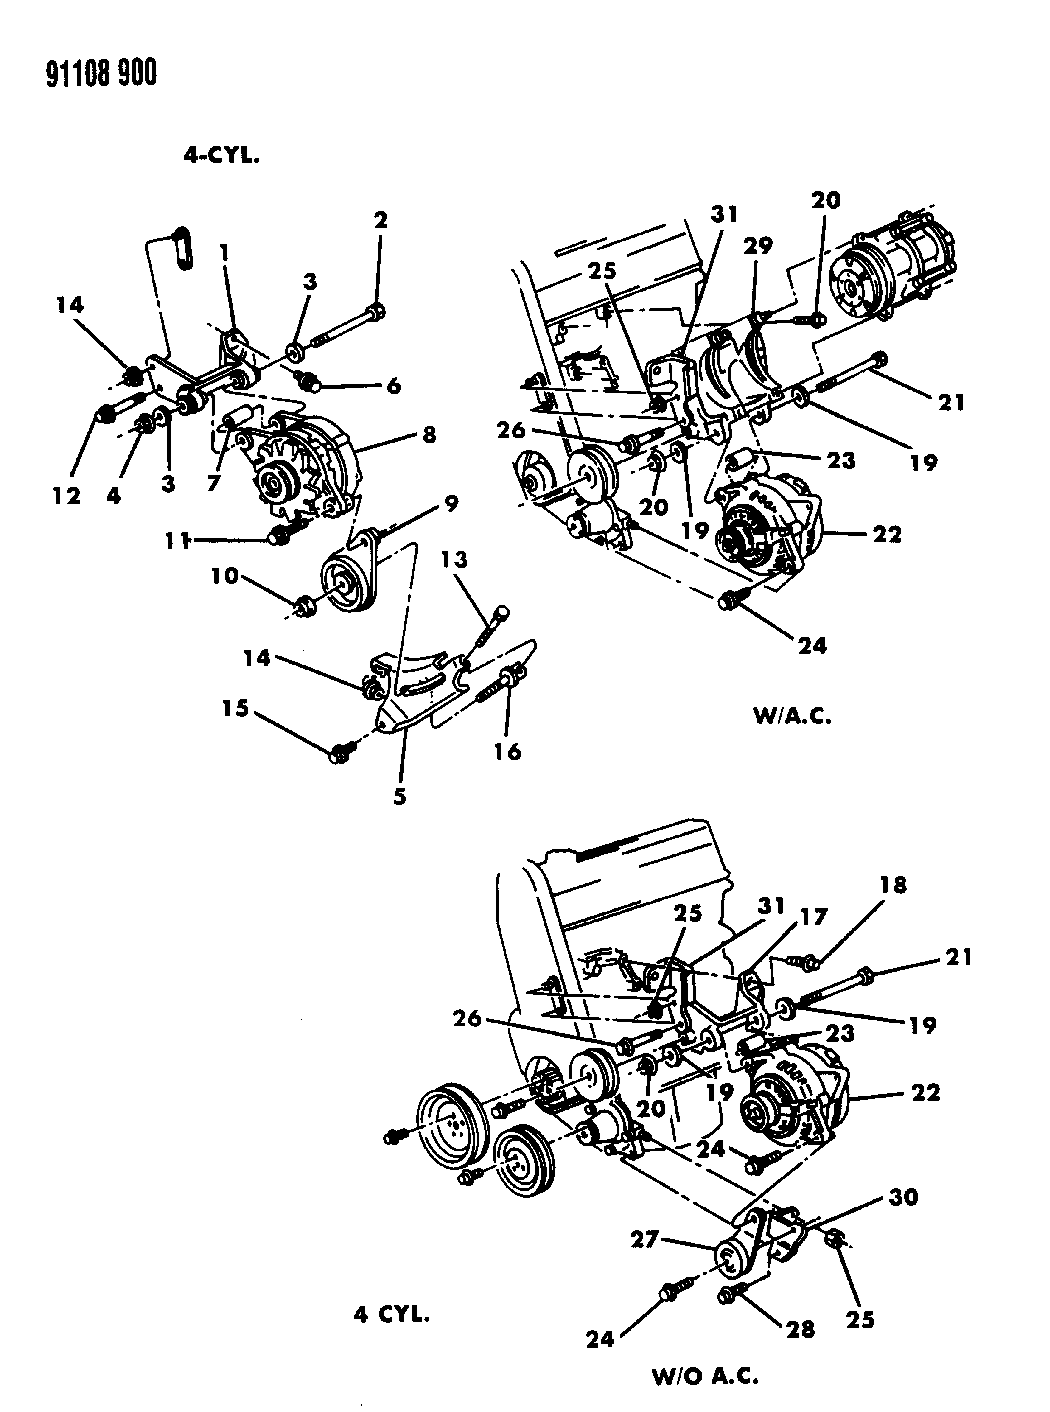 1991 Chrysler Lebaron Wiring Diagram